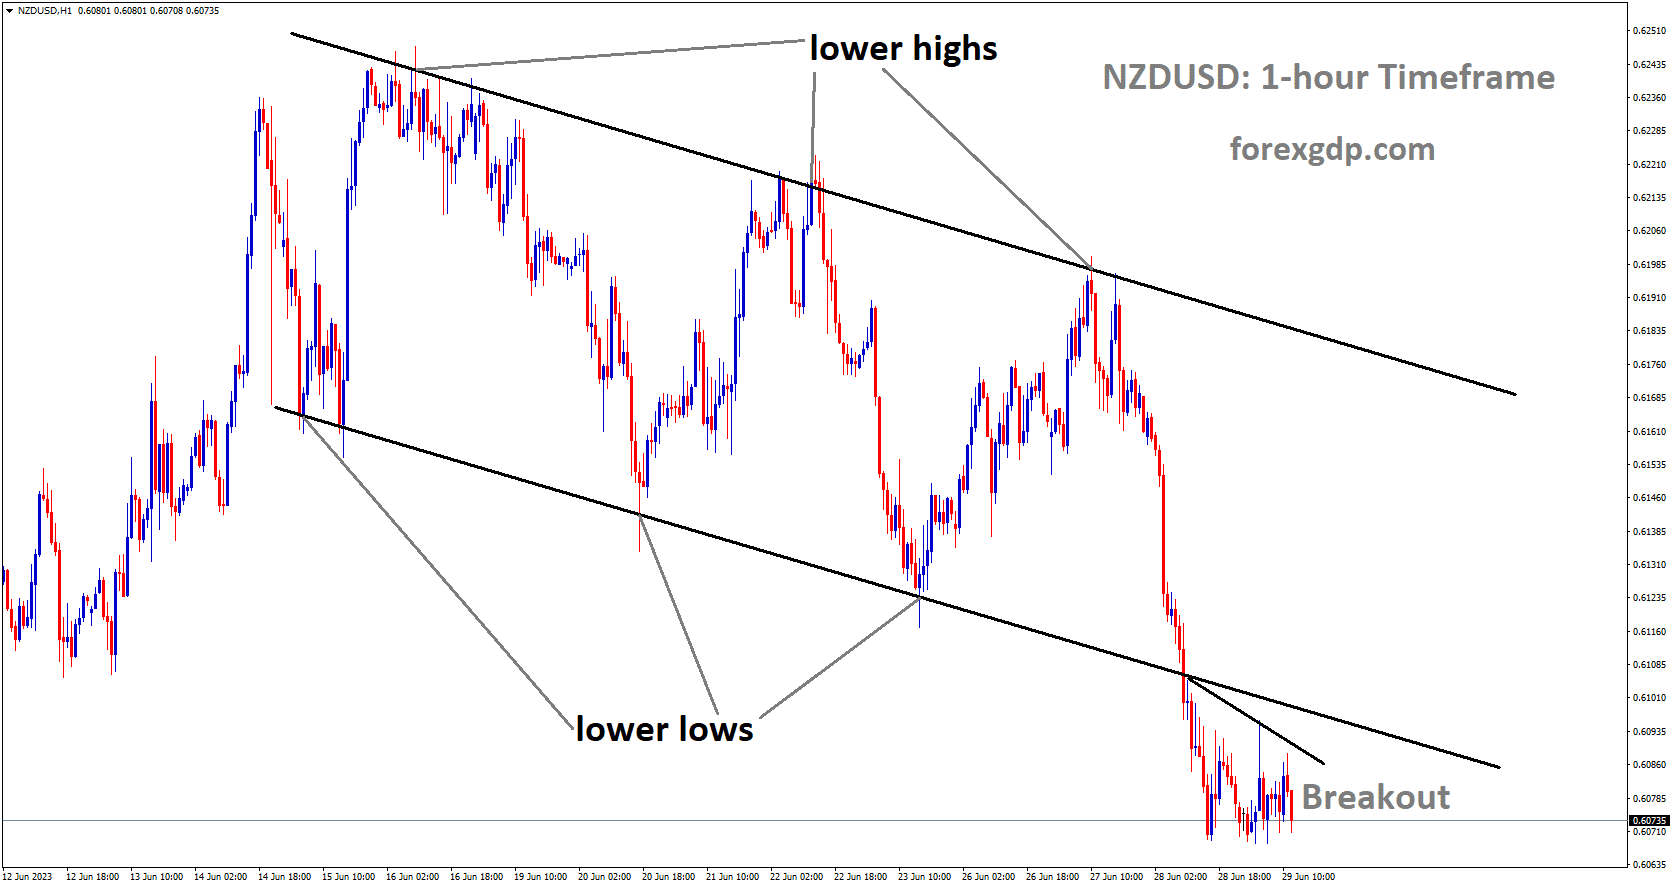 NZDUSD has broken in Descending channel in downside.